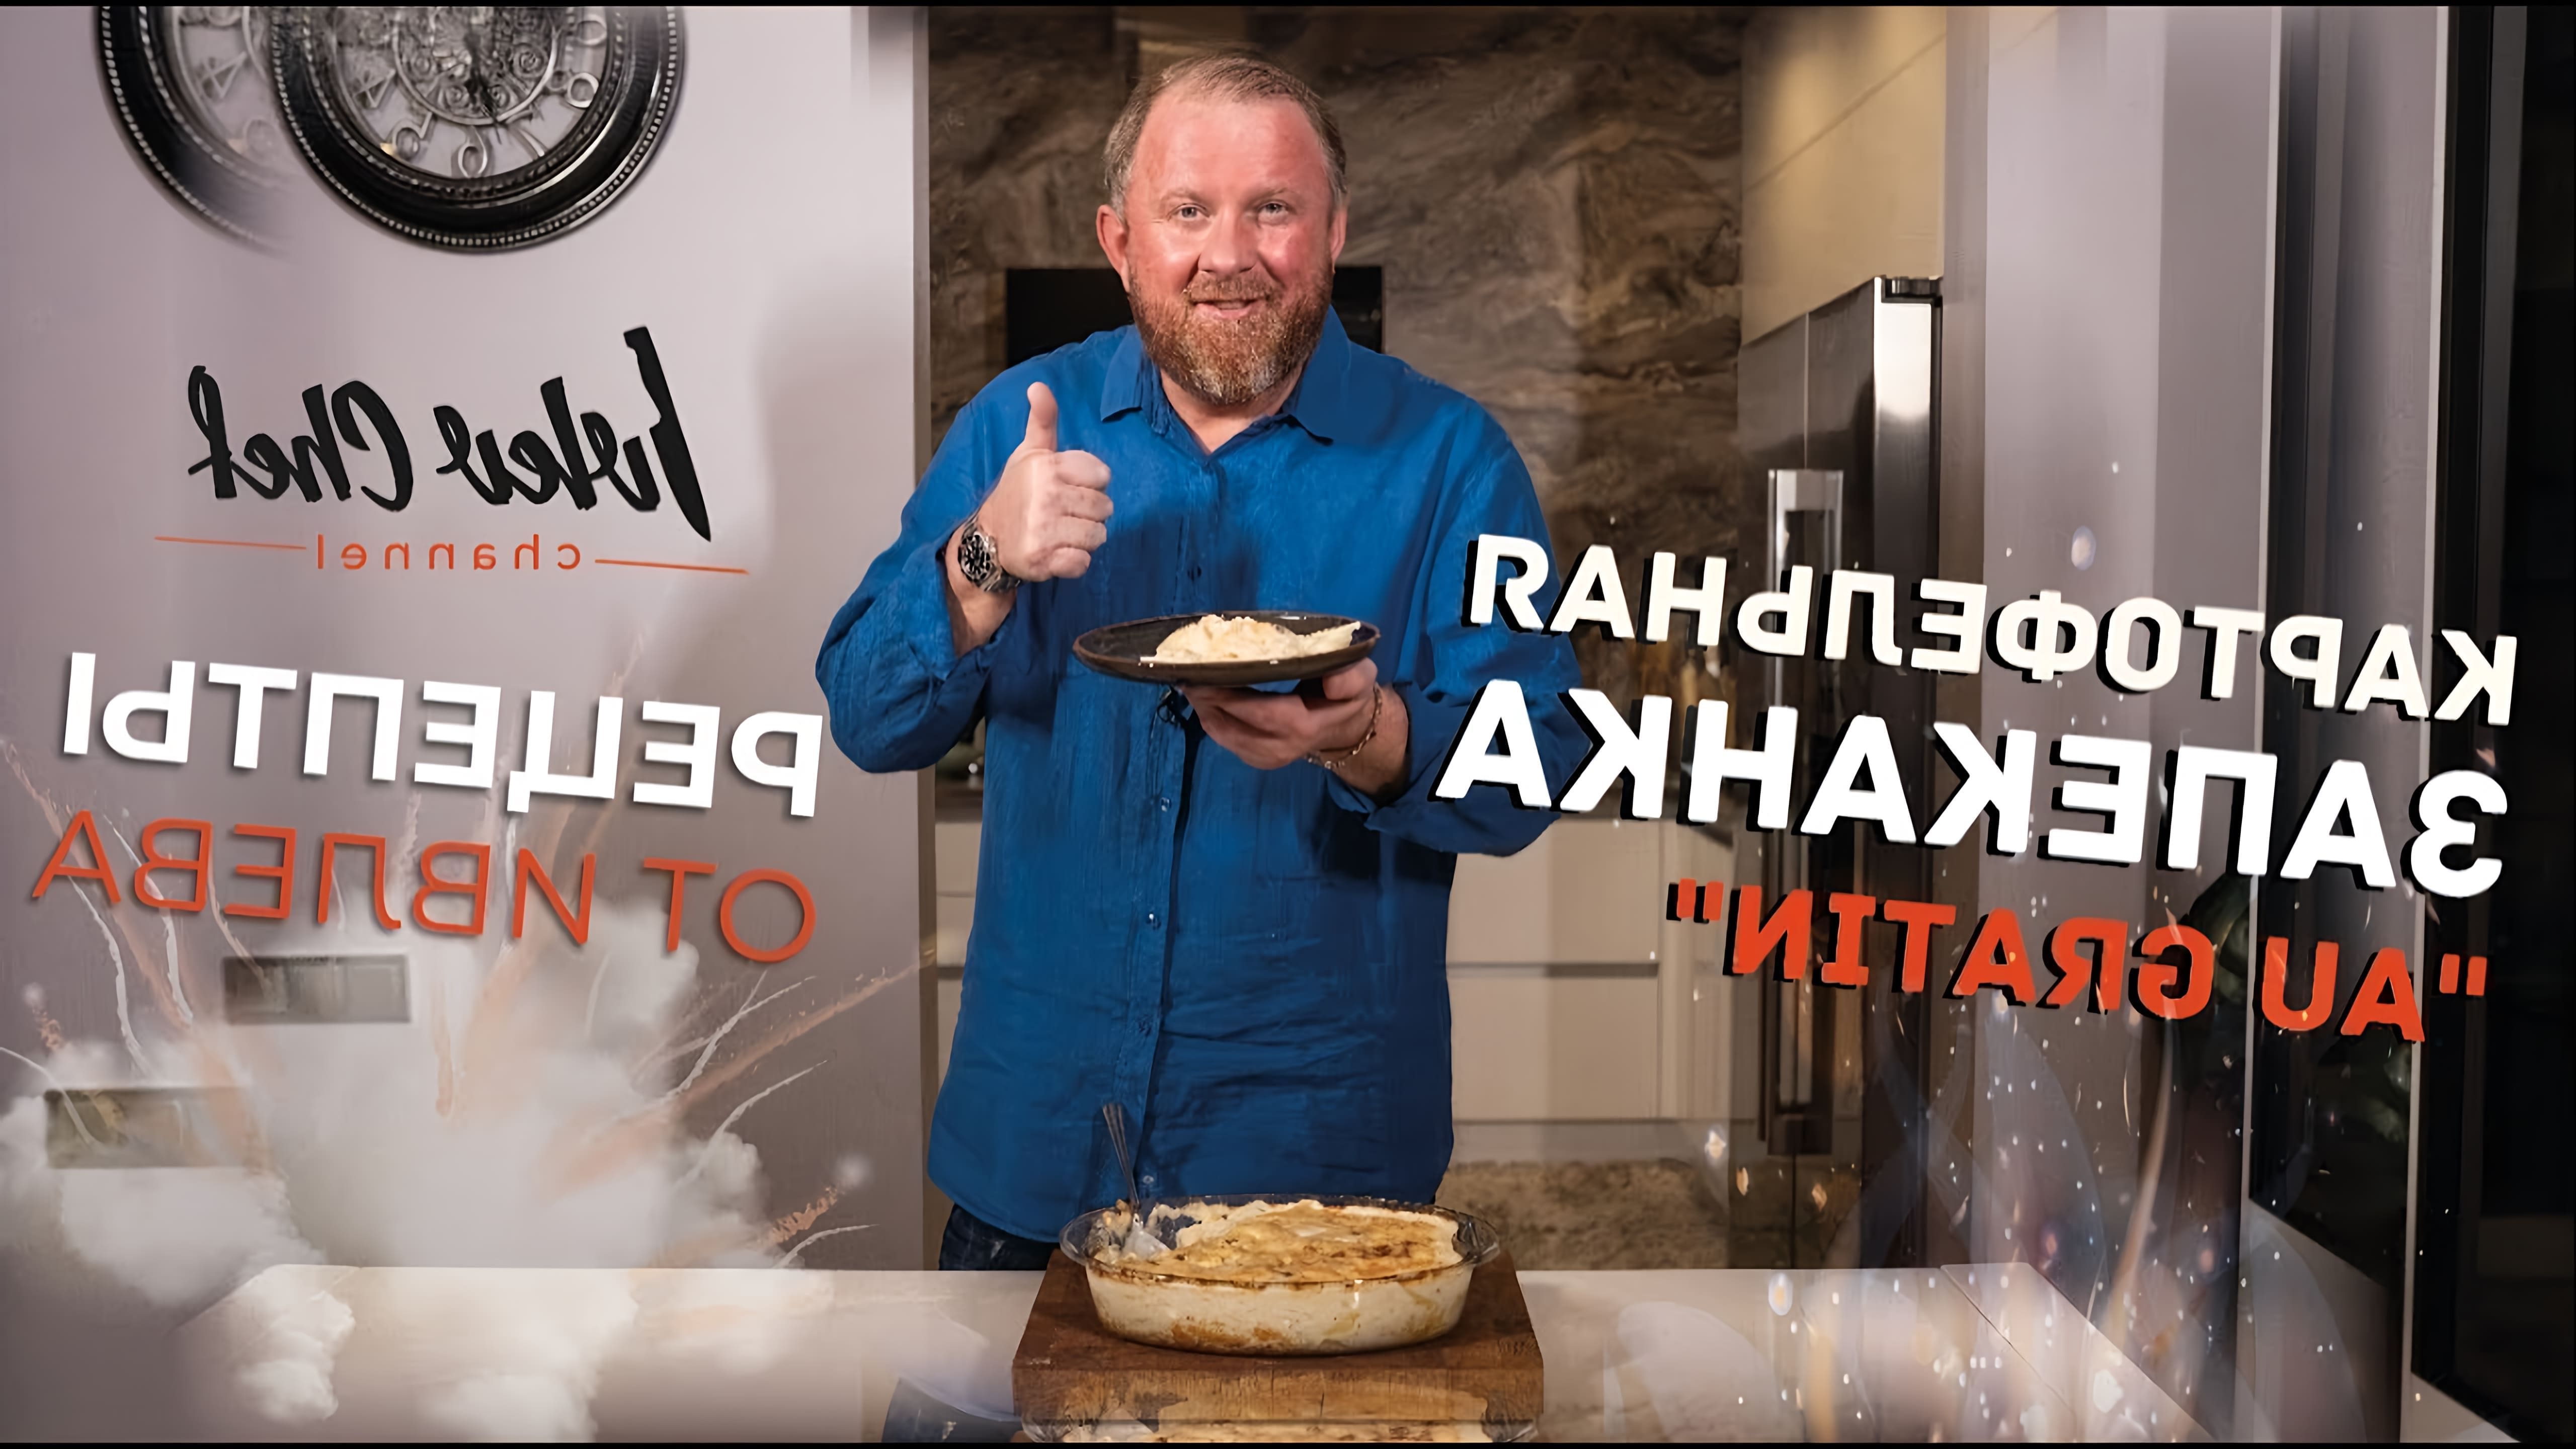 В этом видео шеф-повар Ивлев готовит картофельную запеканку, которая является одним из его любимых блюд